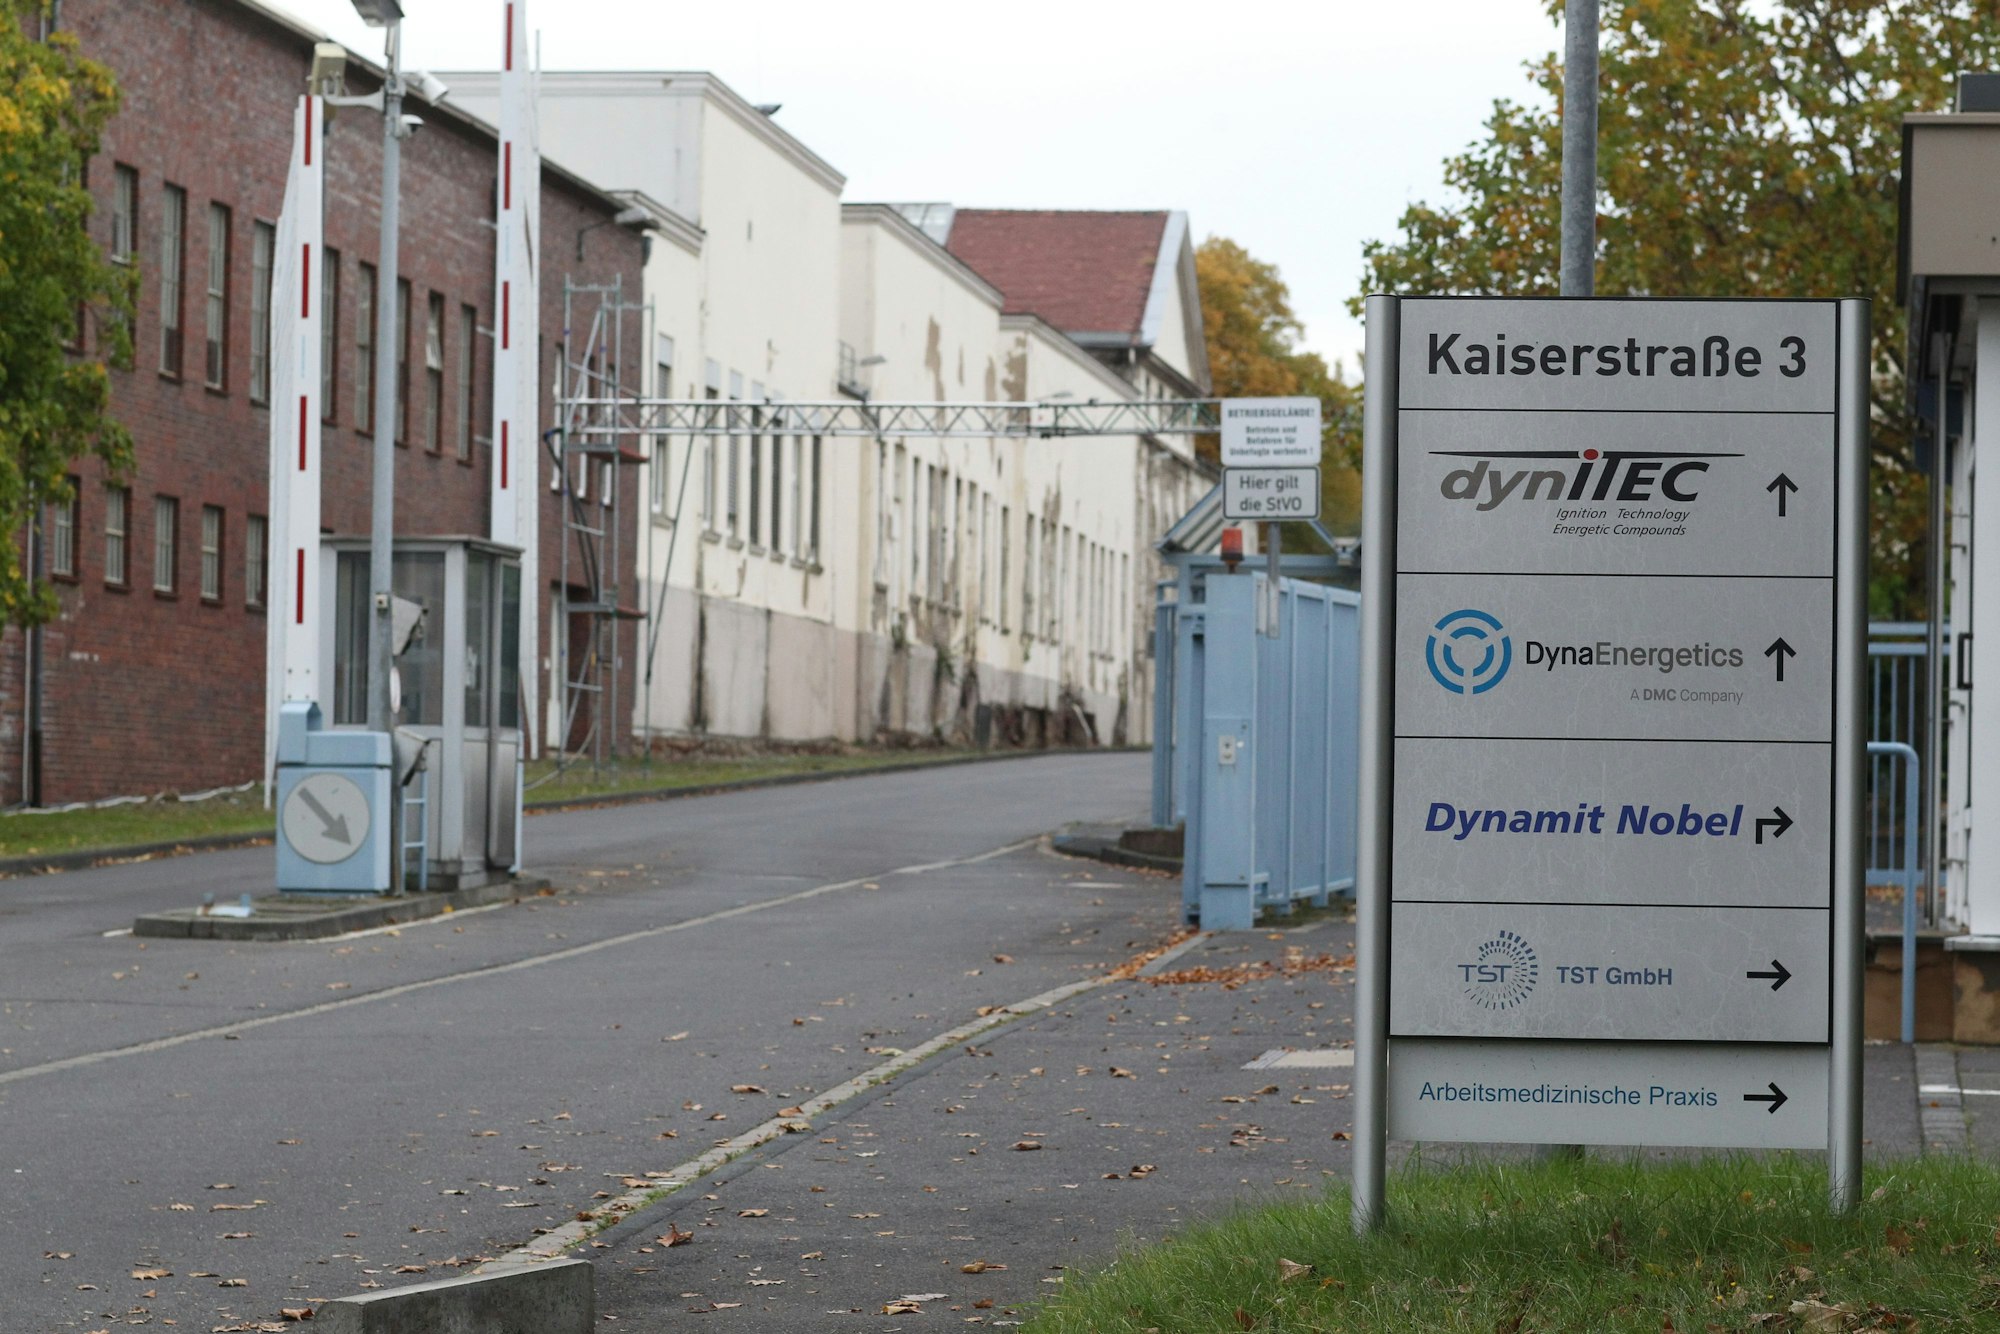 Die Zufahrt zu einem Industriegelände. Links stehen Fabrikgebäude, rechts eine Informationssäule mit den Namen ansässiger Firmen.